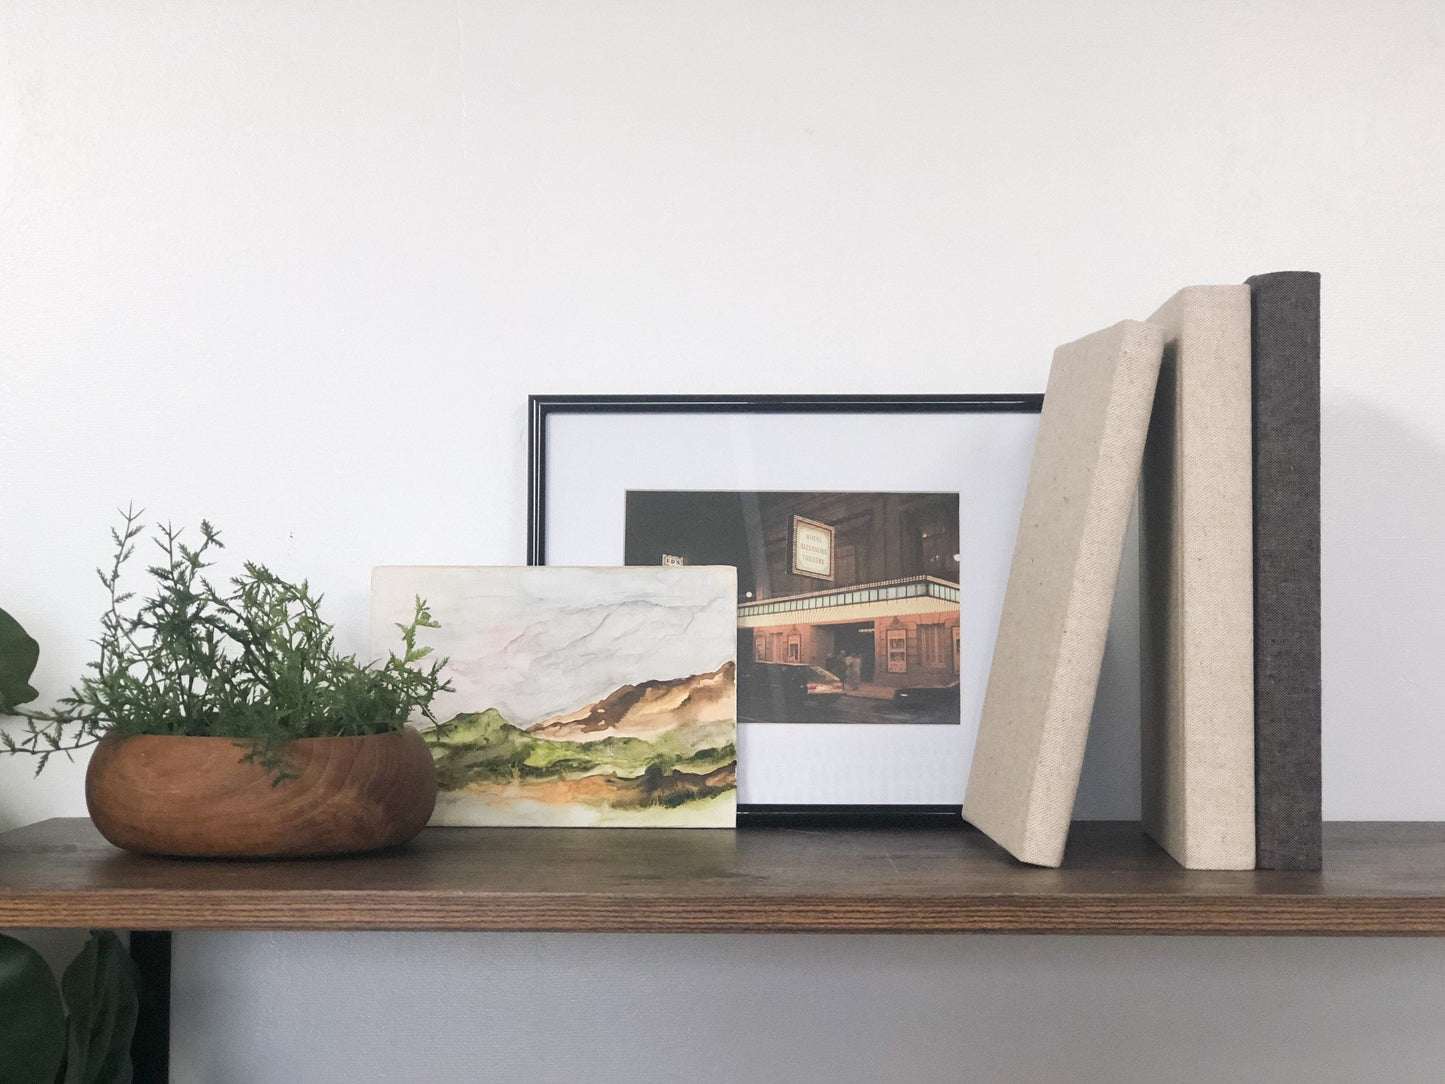 Home Decor / Shelf Decor Set / Landscape Painting / Decorative Books